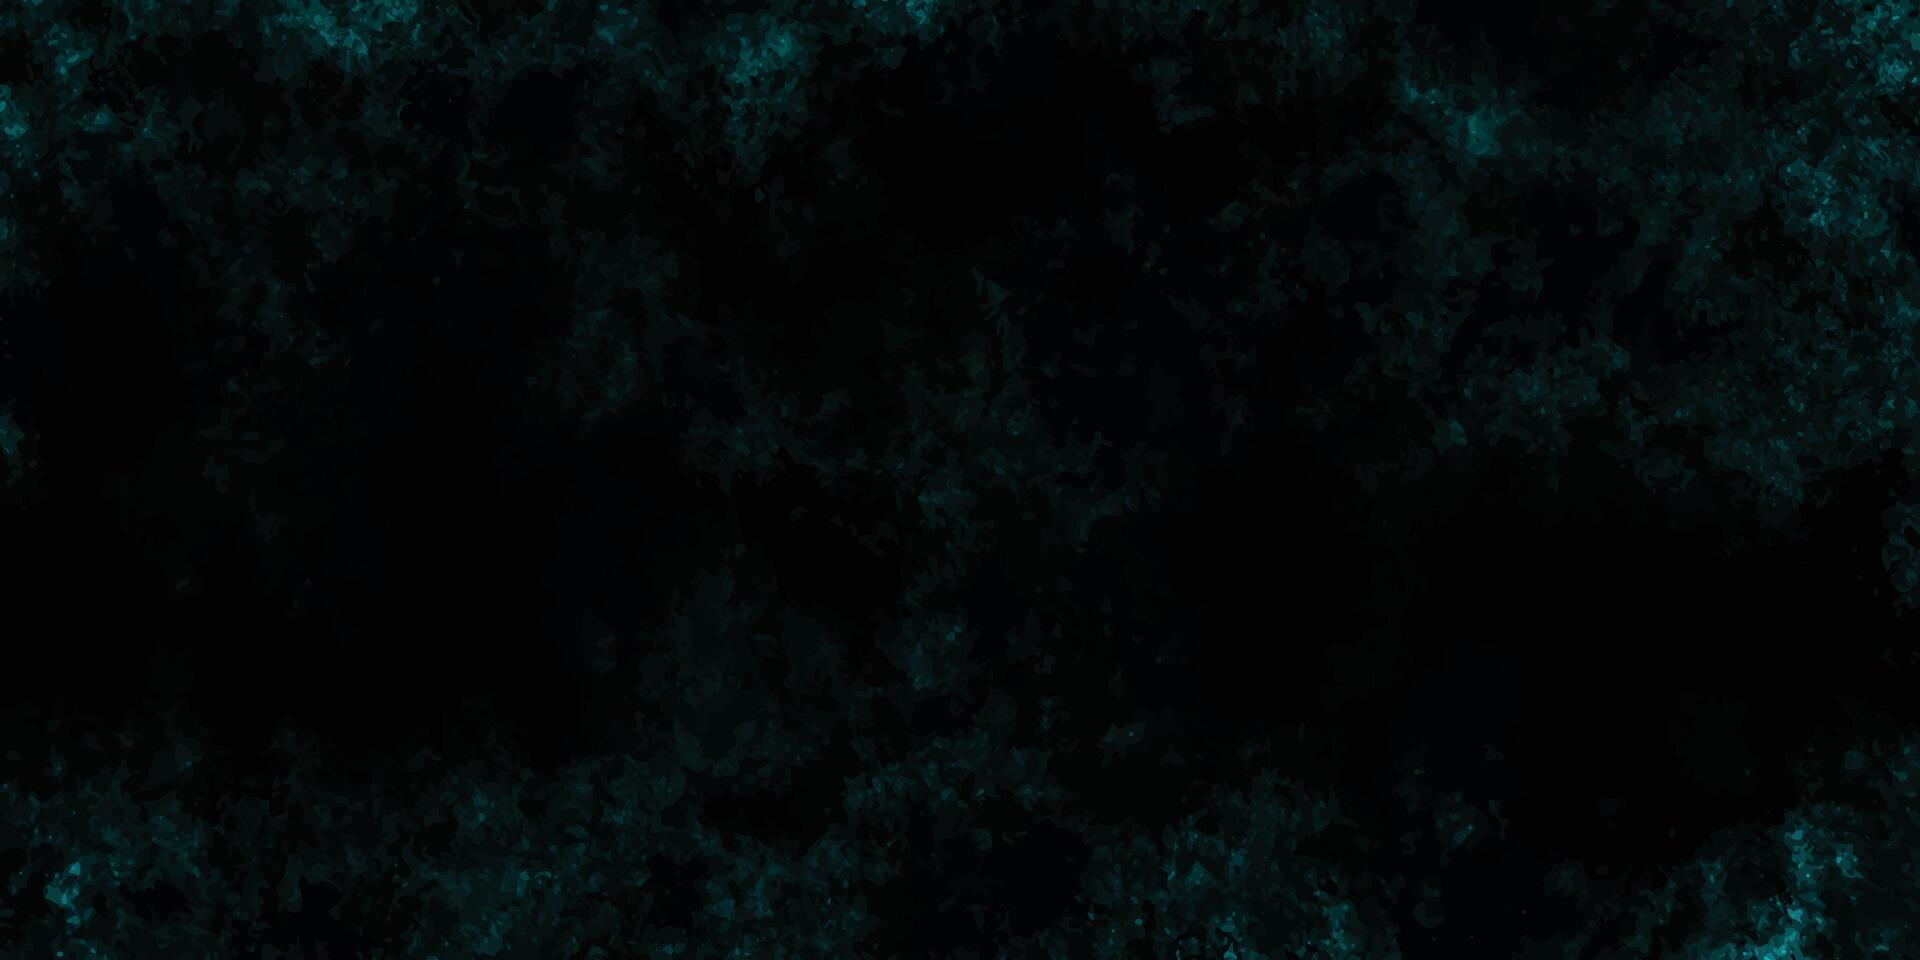 Scratch grunge urban background, distressed turquoise grunge texture on a dark background, vector